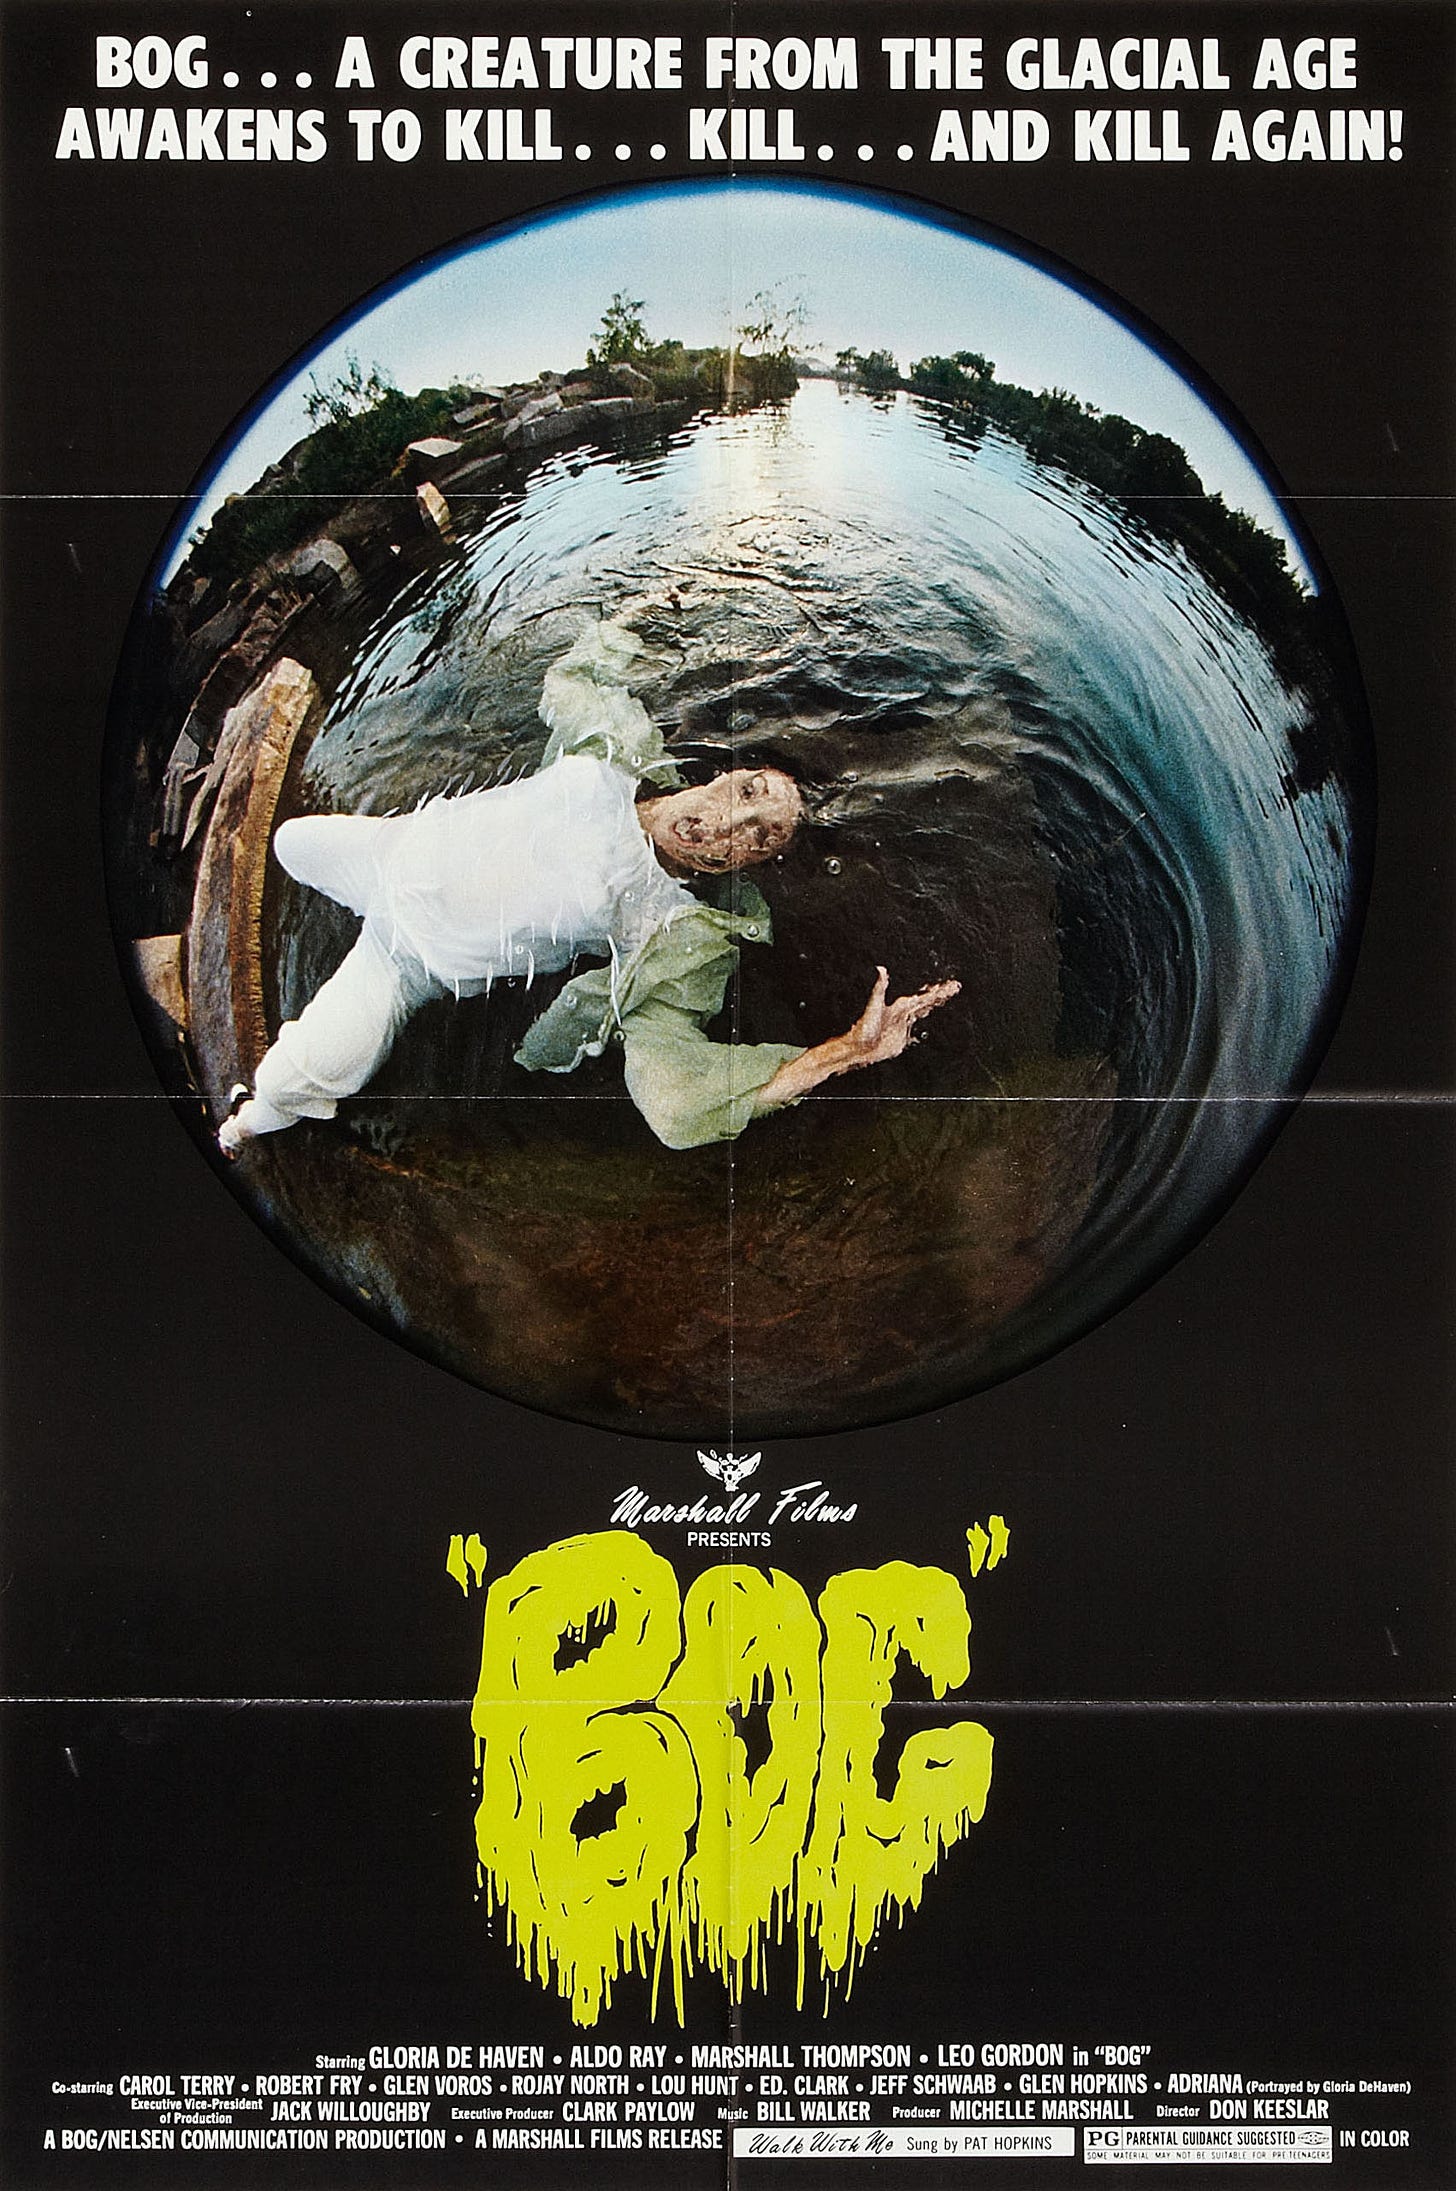 Bog (1979) - IMDb